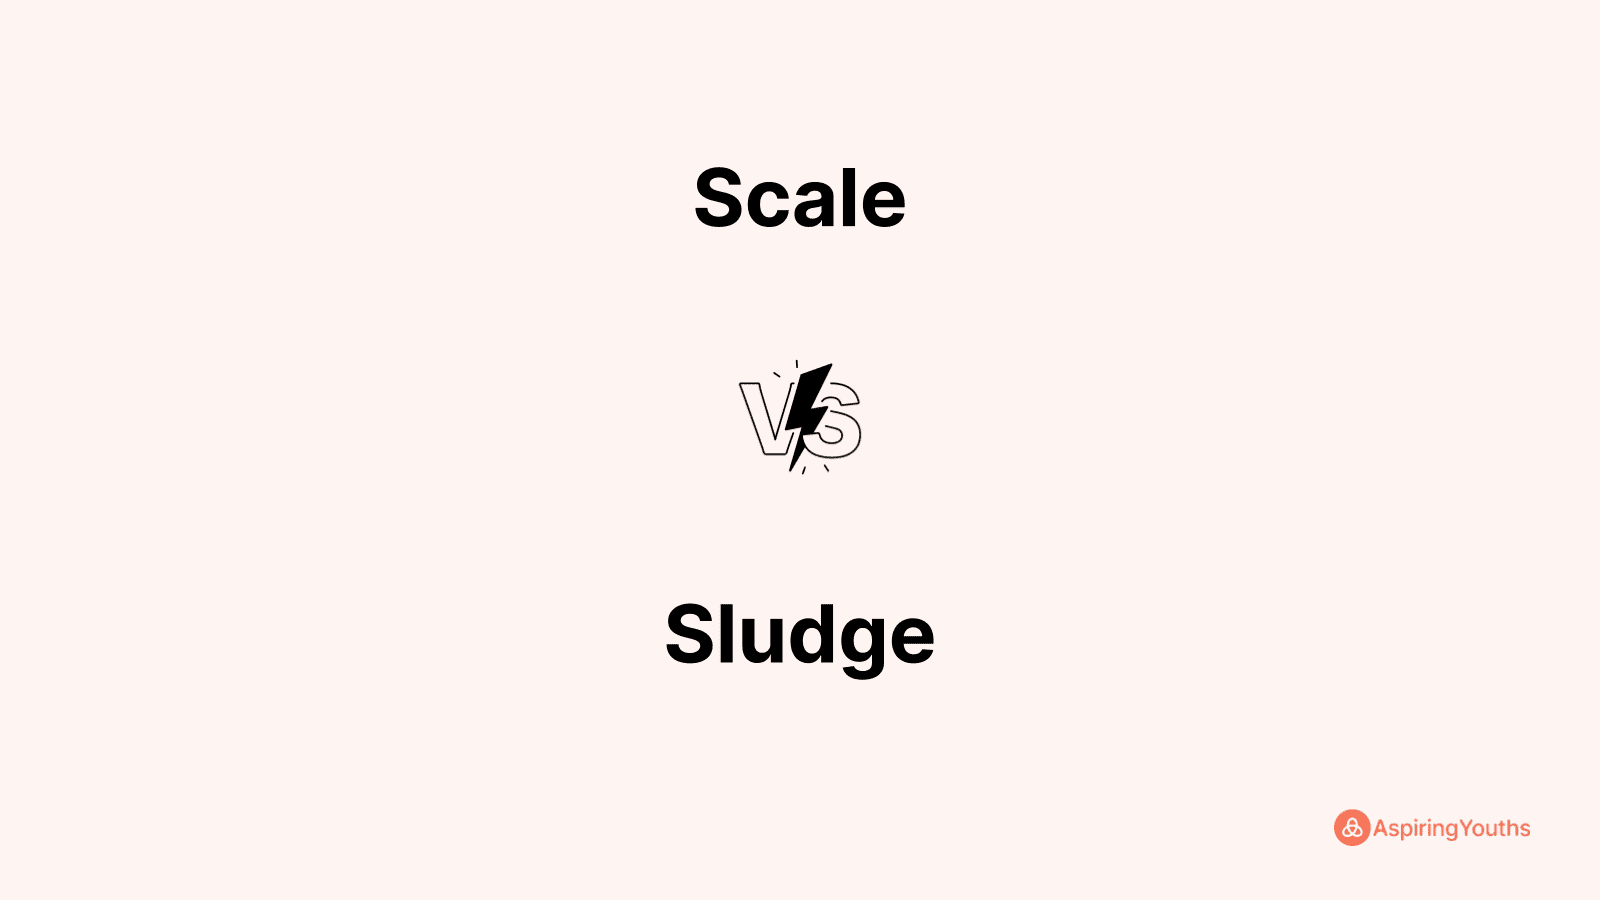 Scale vs Sludge